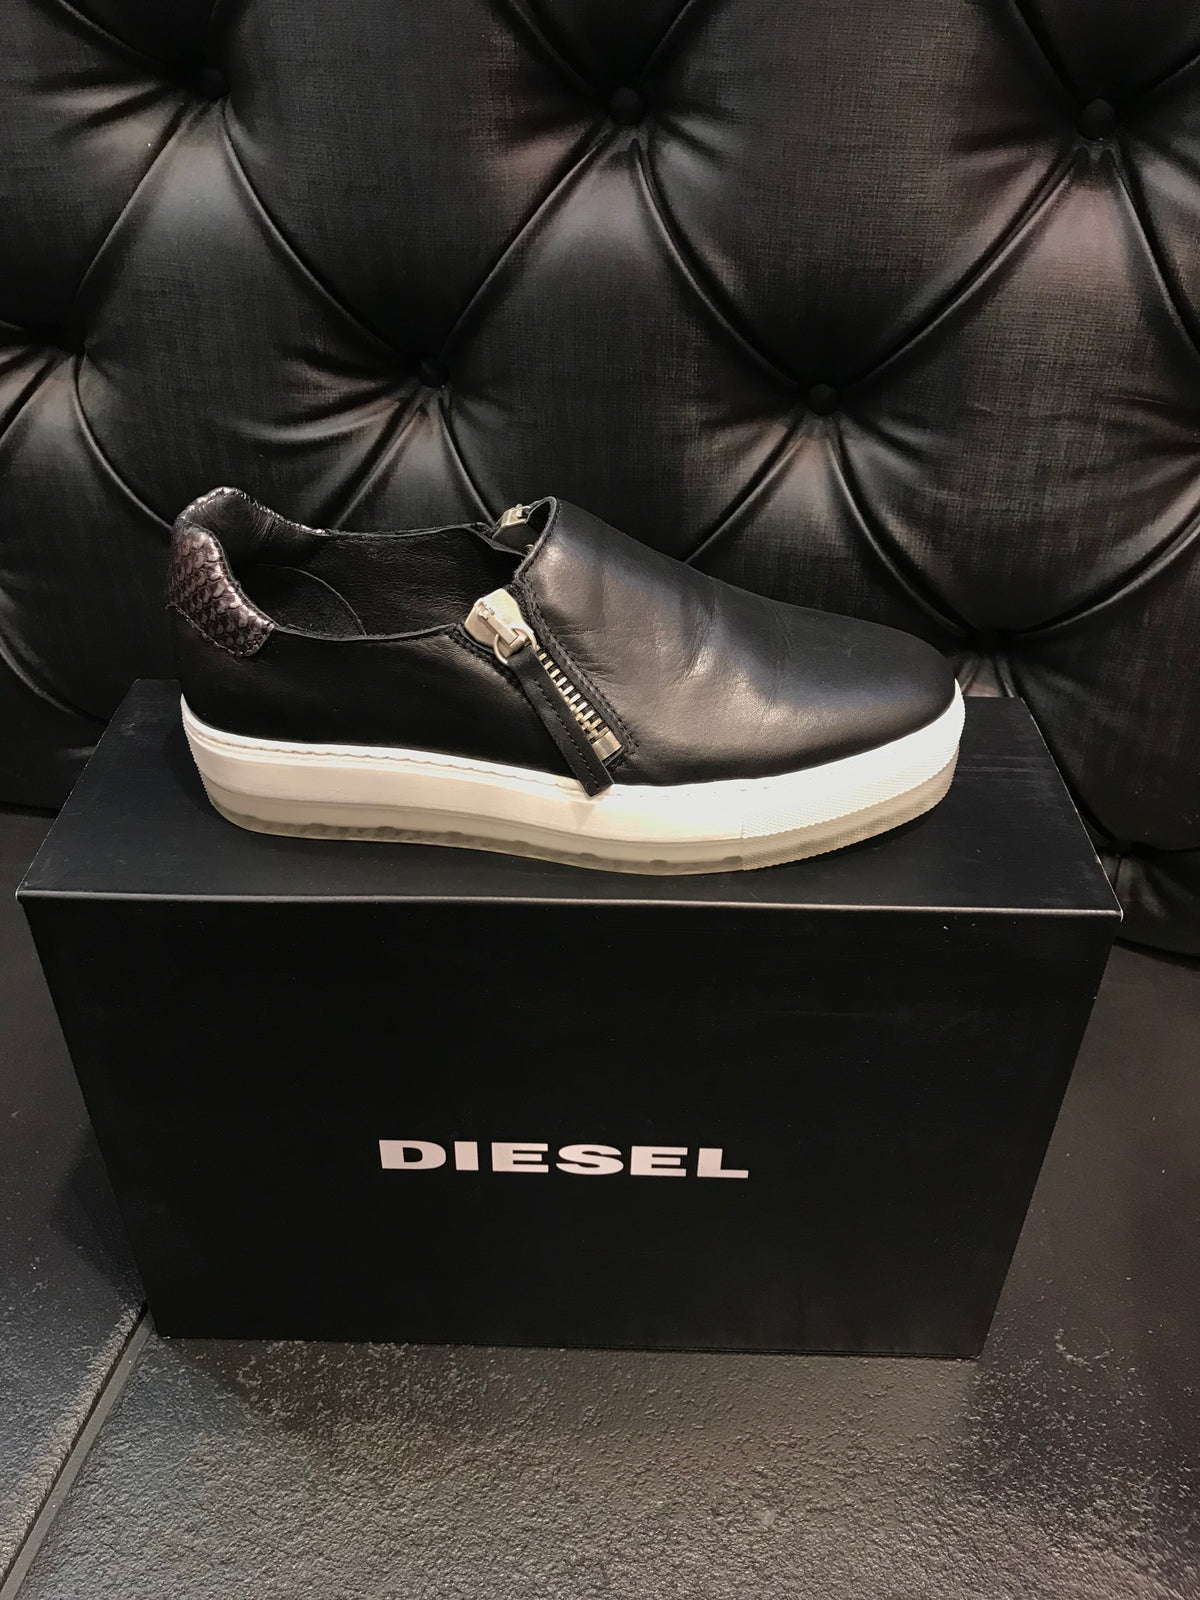 Diesel shoe black